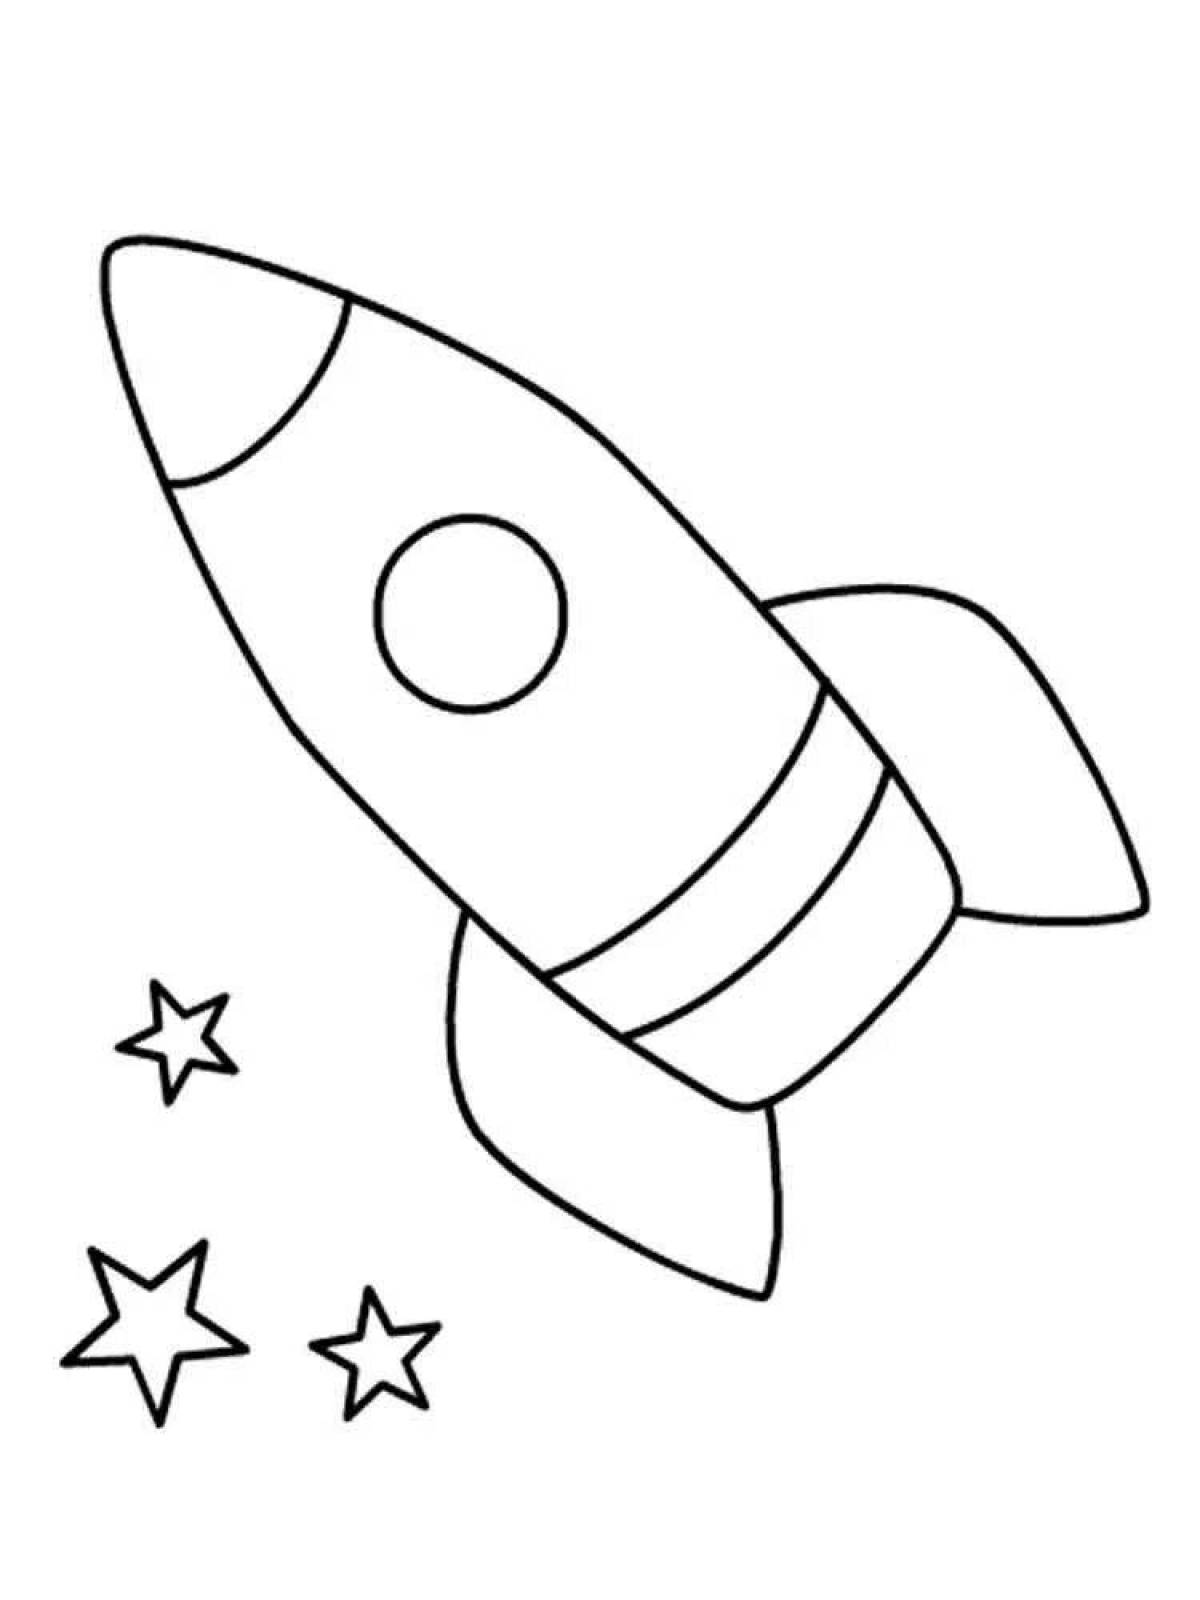 Ракета рисунок для детей 5 лет. Ракета раскраска. Ракета раскраска для детей. Космос раскраска для детей. Раскраска ракета в космосе.